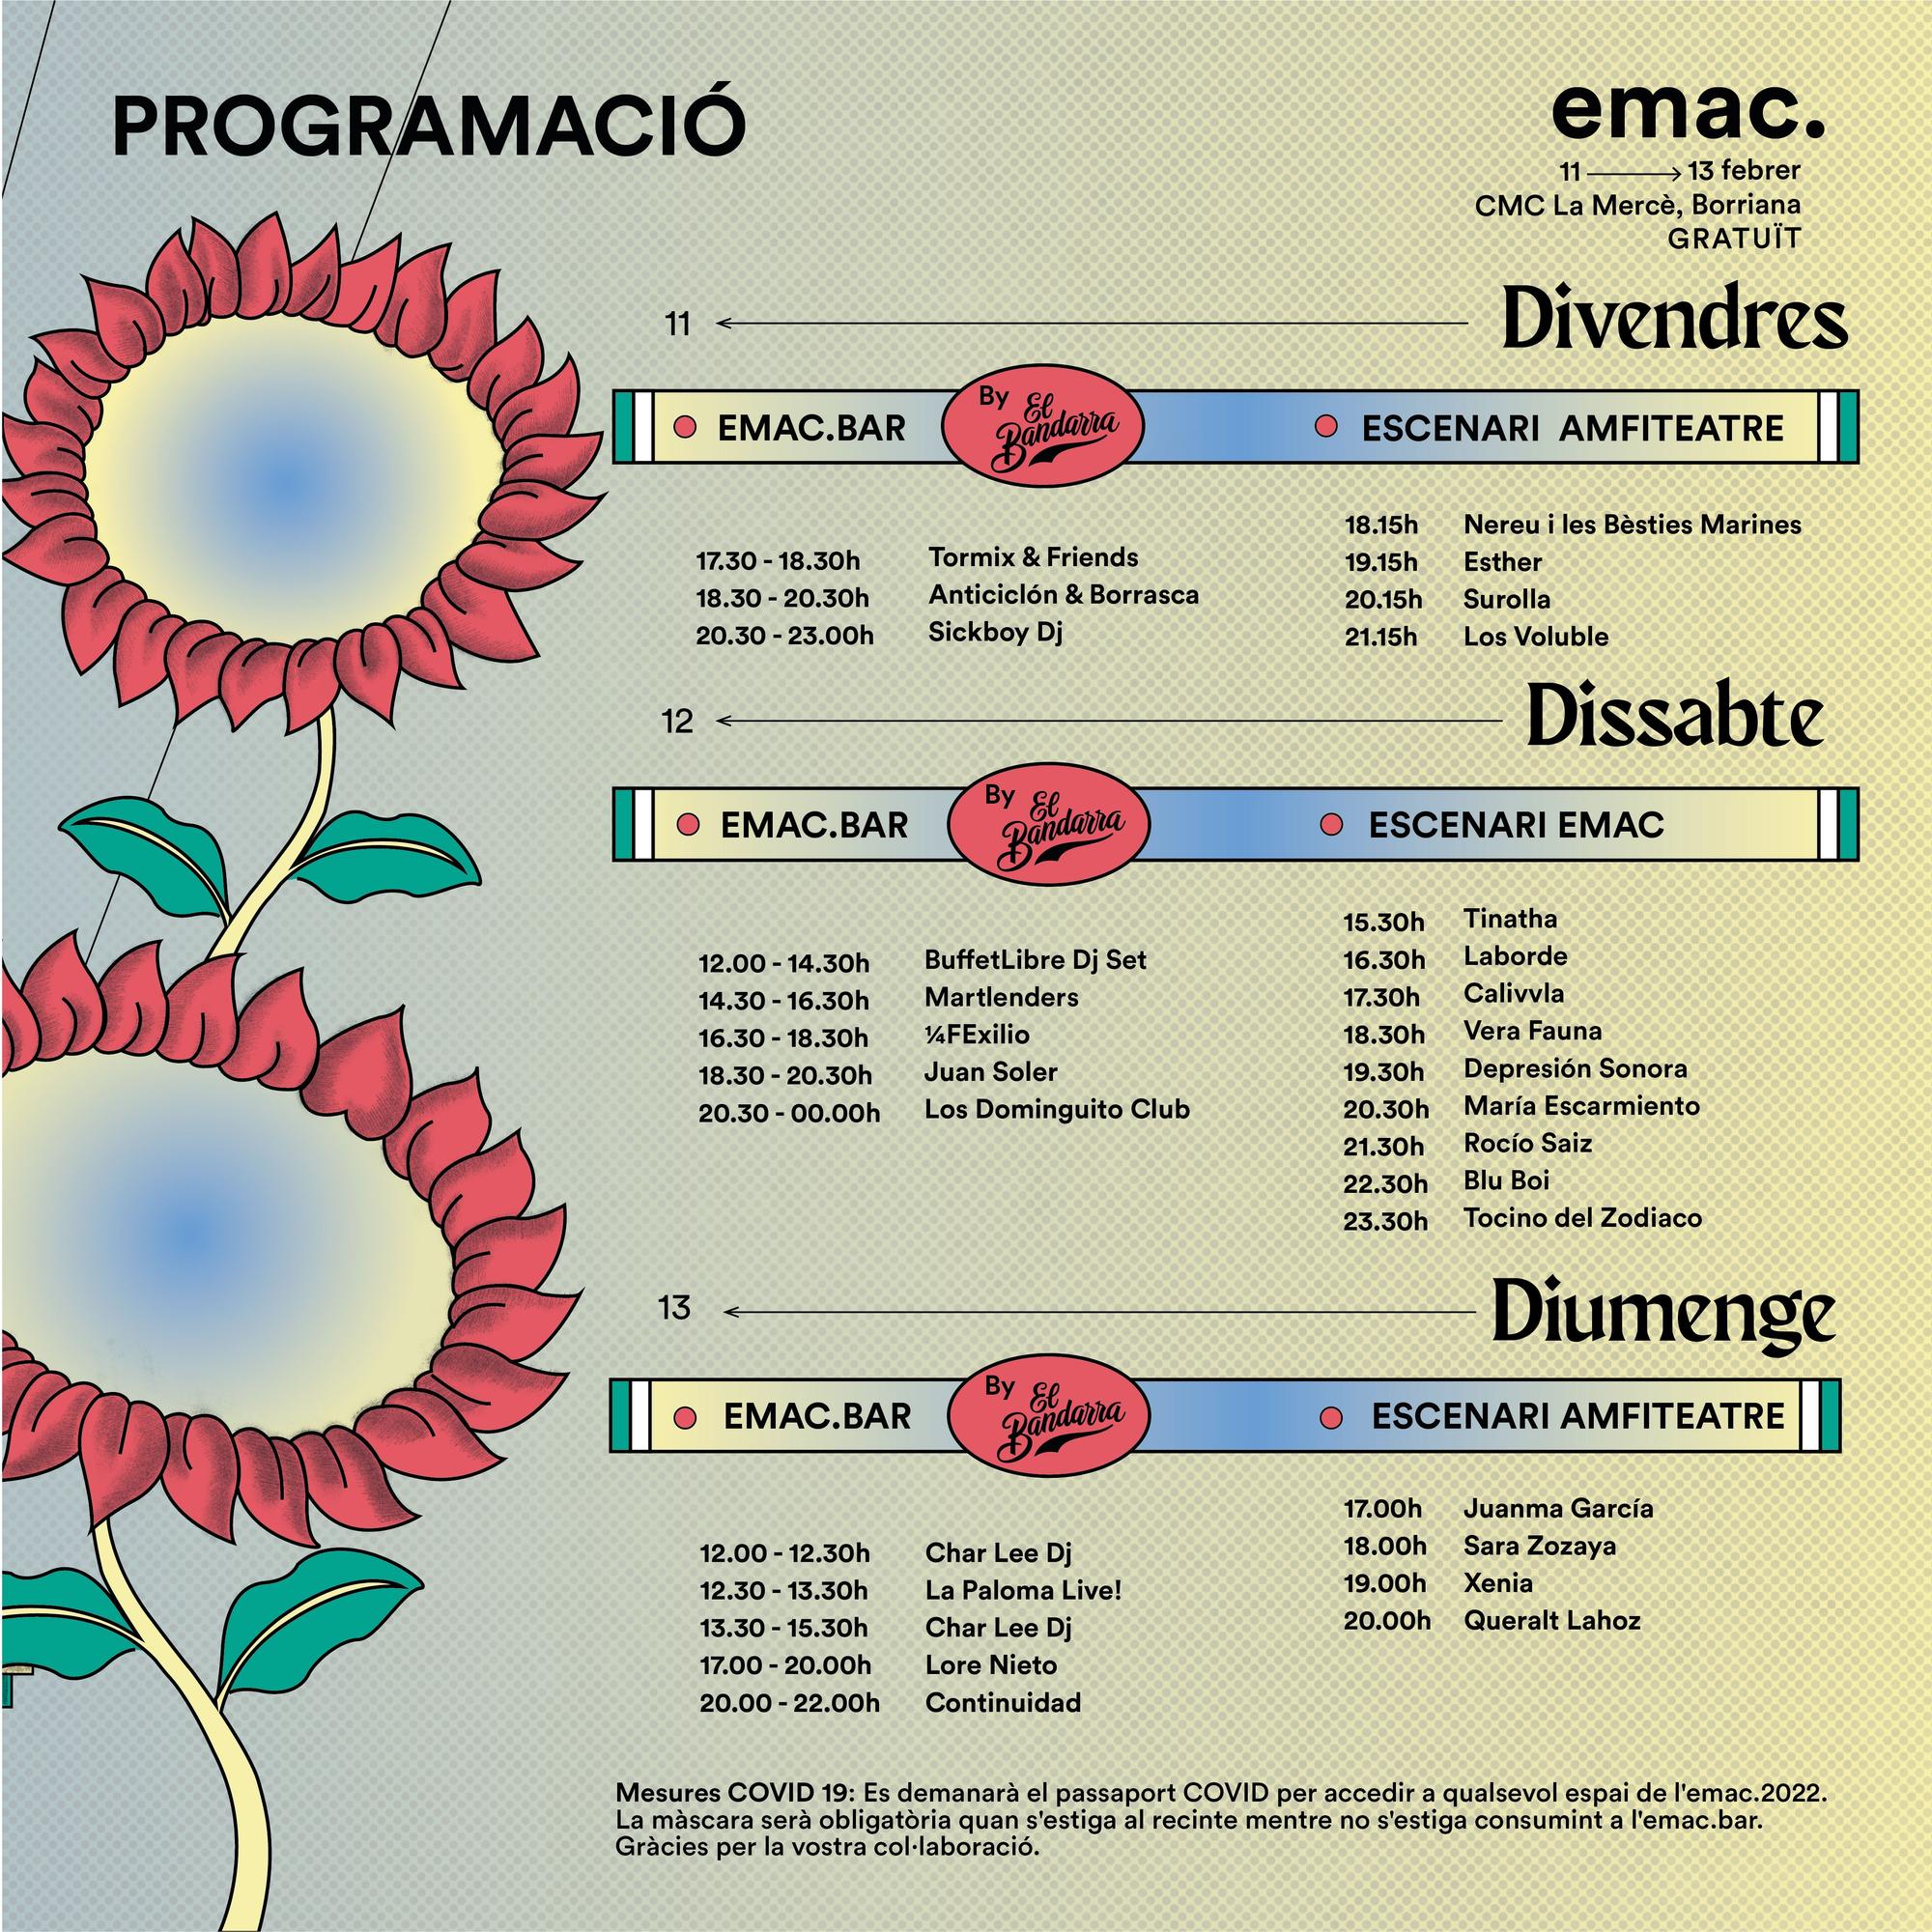 Programación Emac 2022 en Burriana.